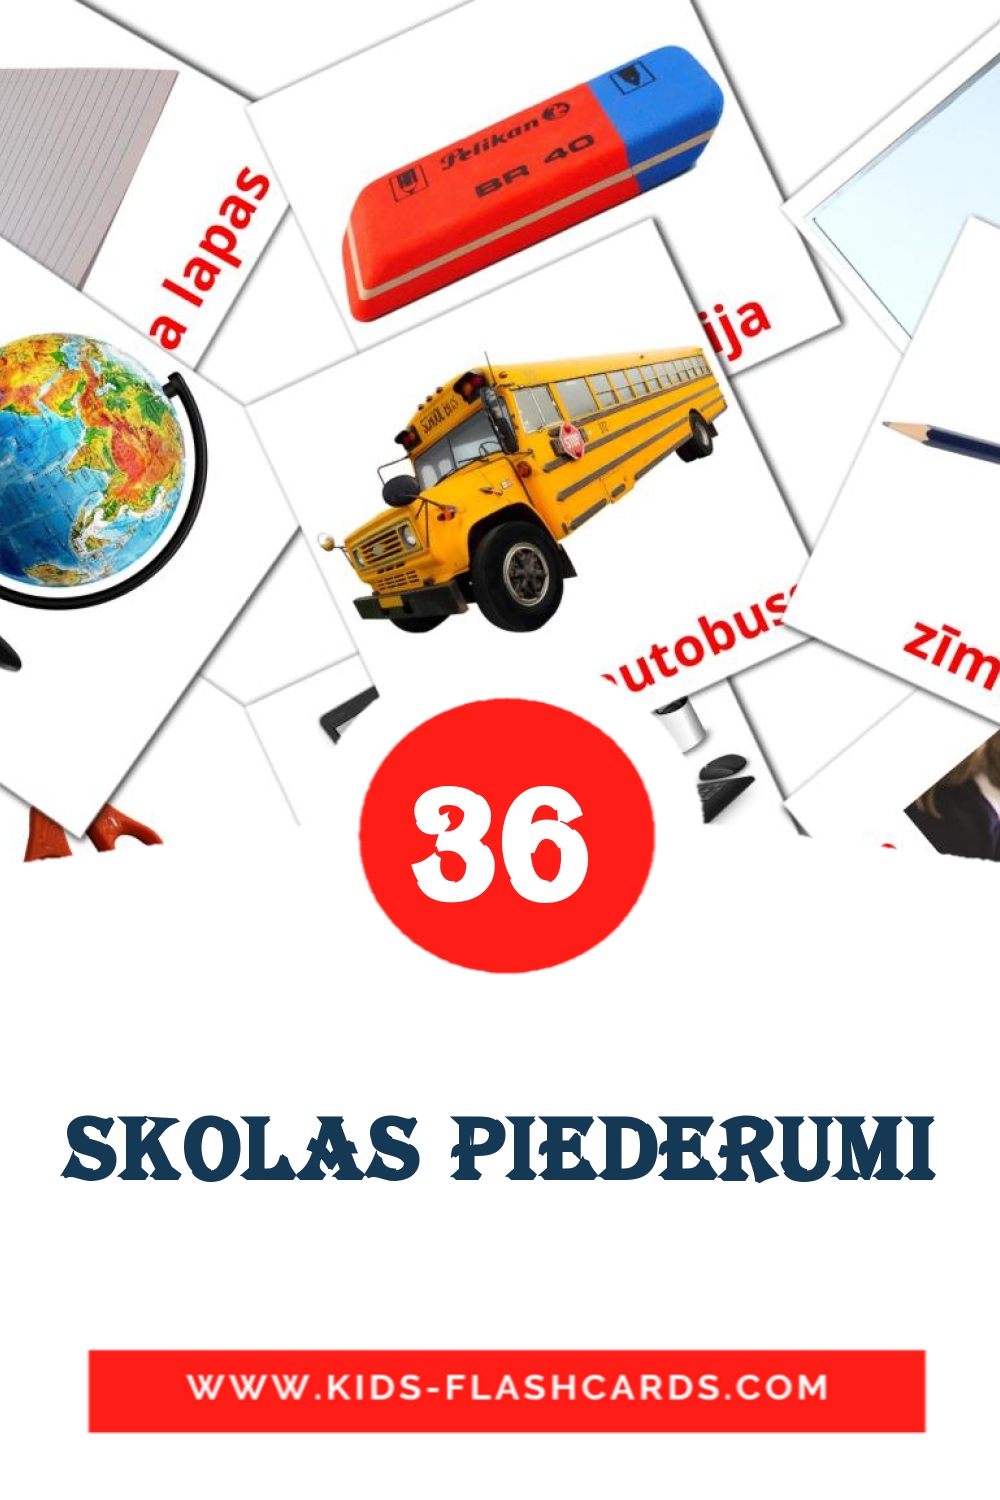 36 Skolas piederumi fotokaarten voor kleuters in het lets